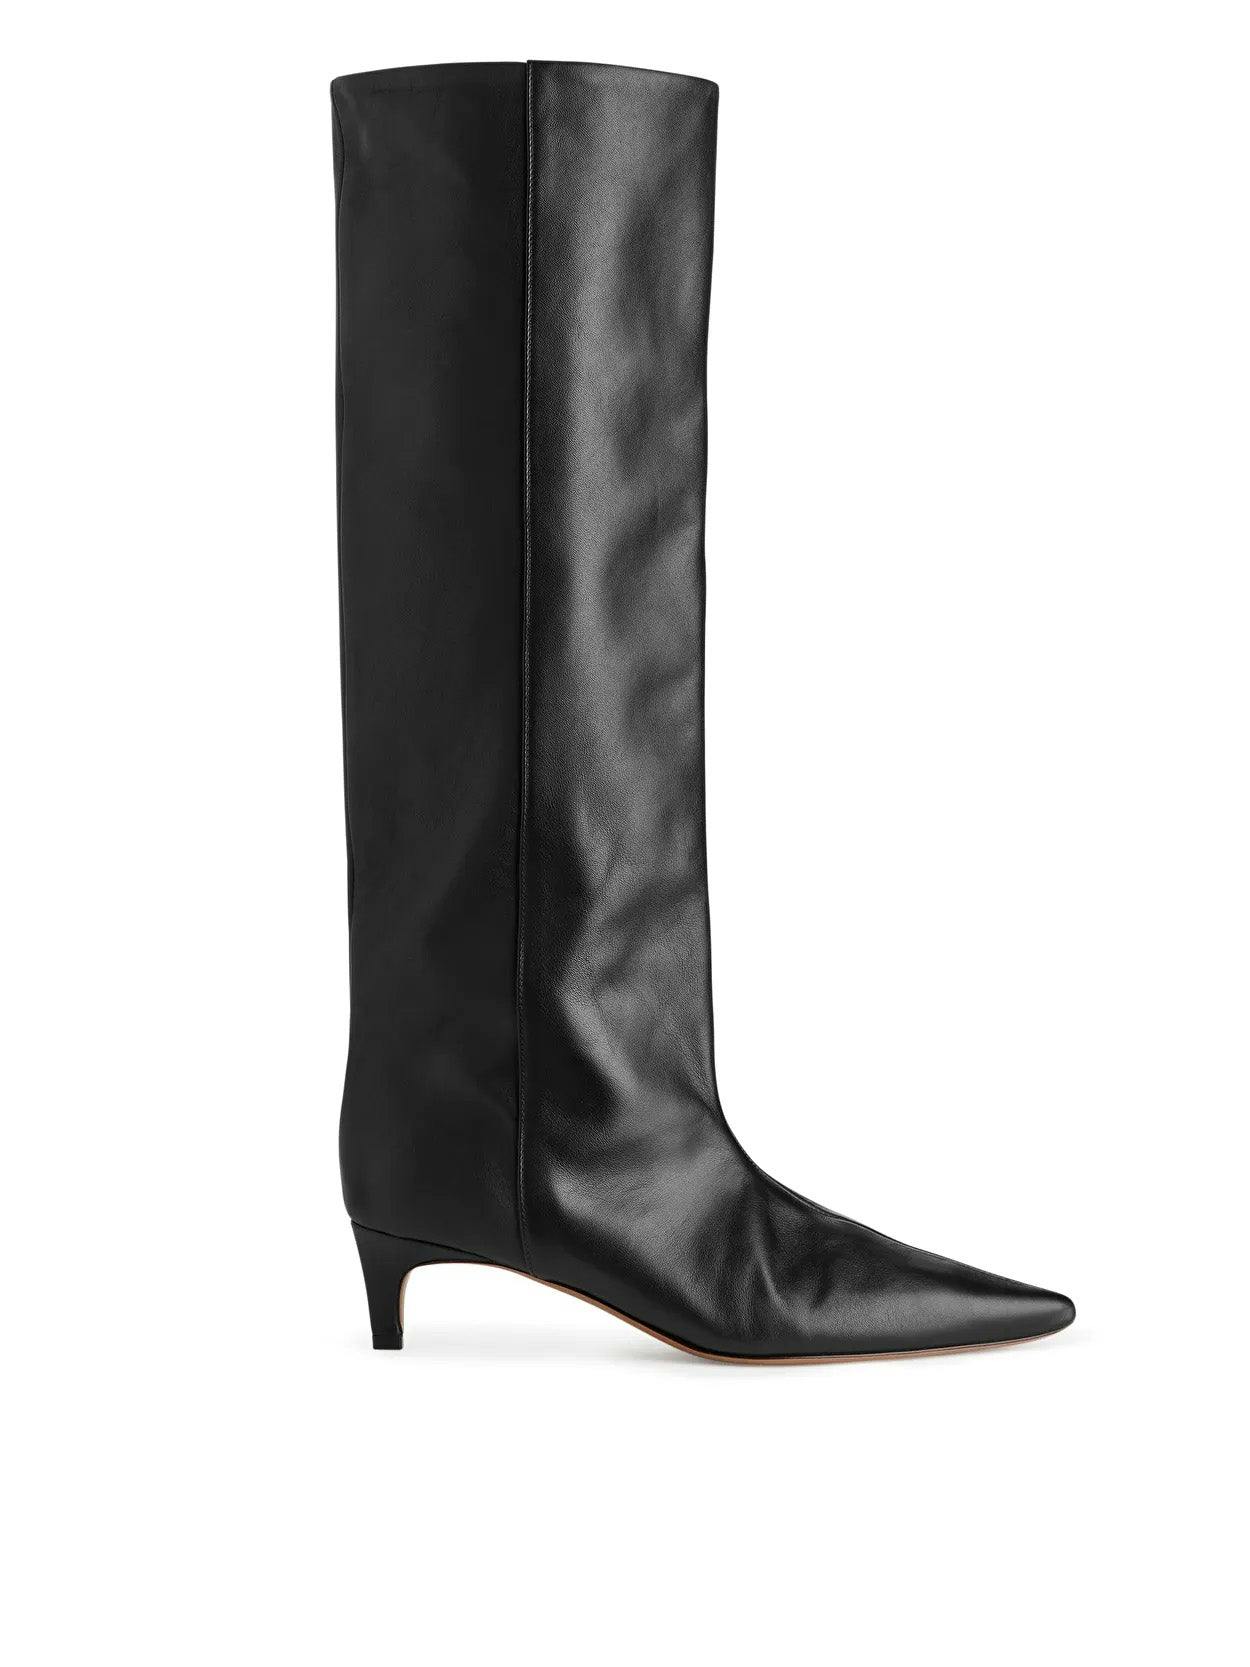 Black pointed kitten-heel boots